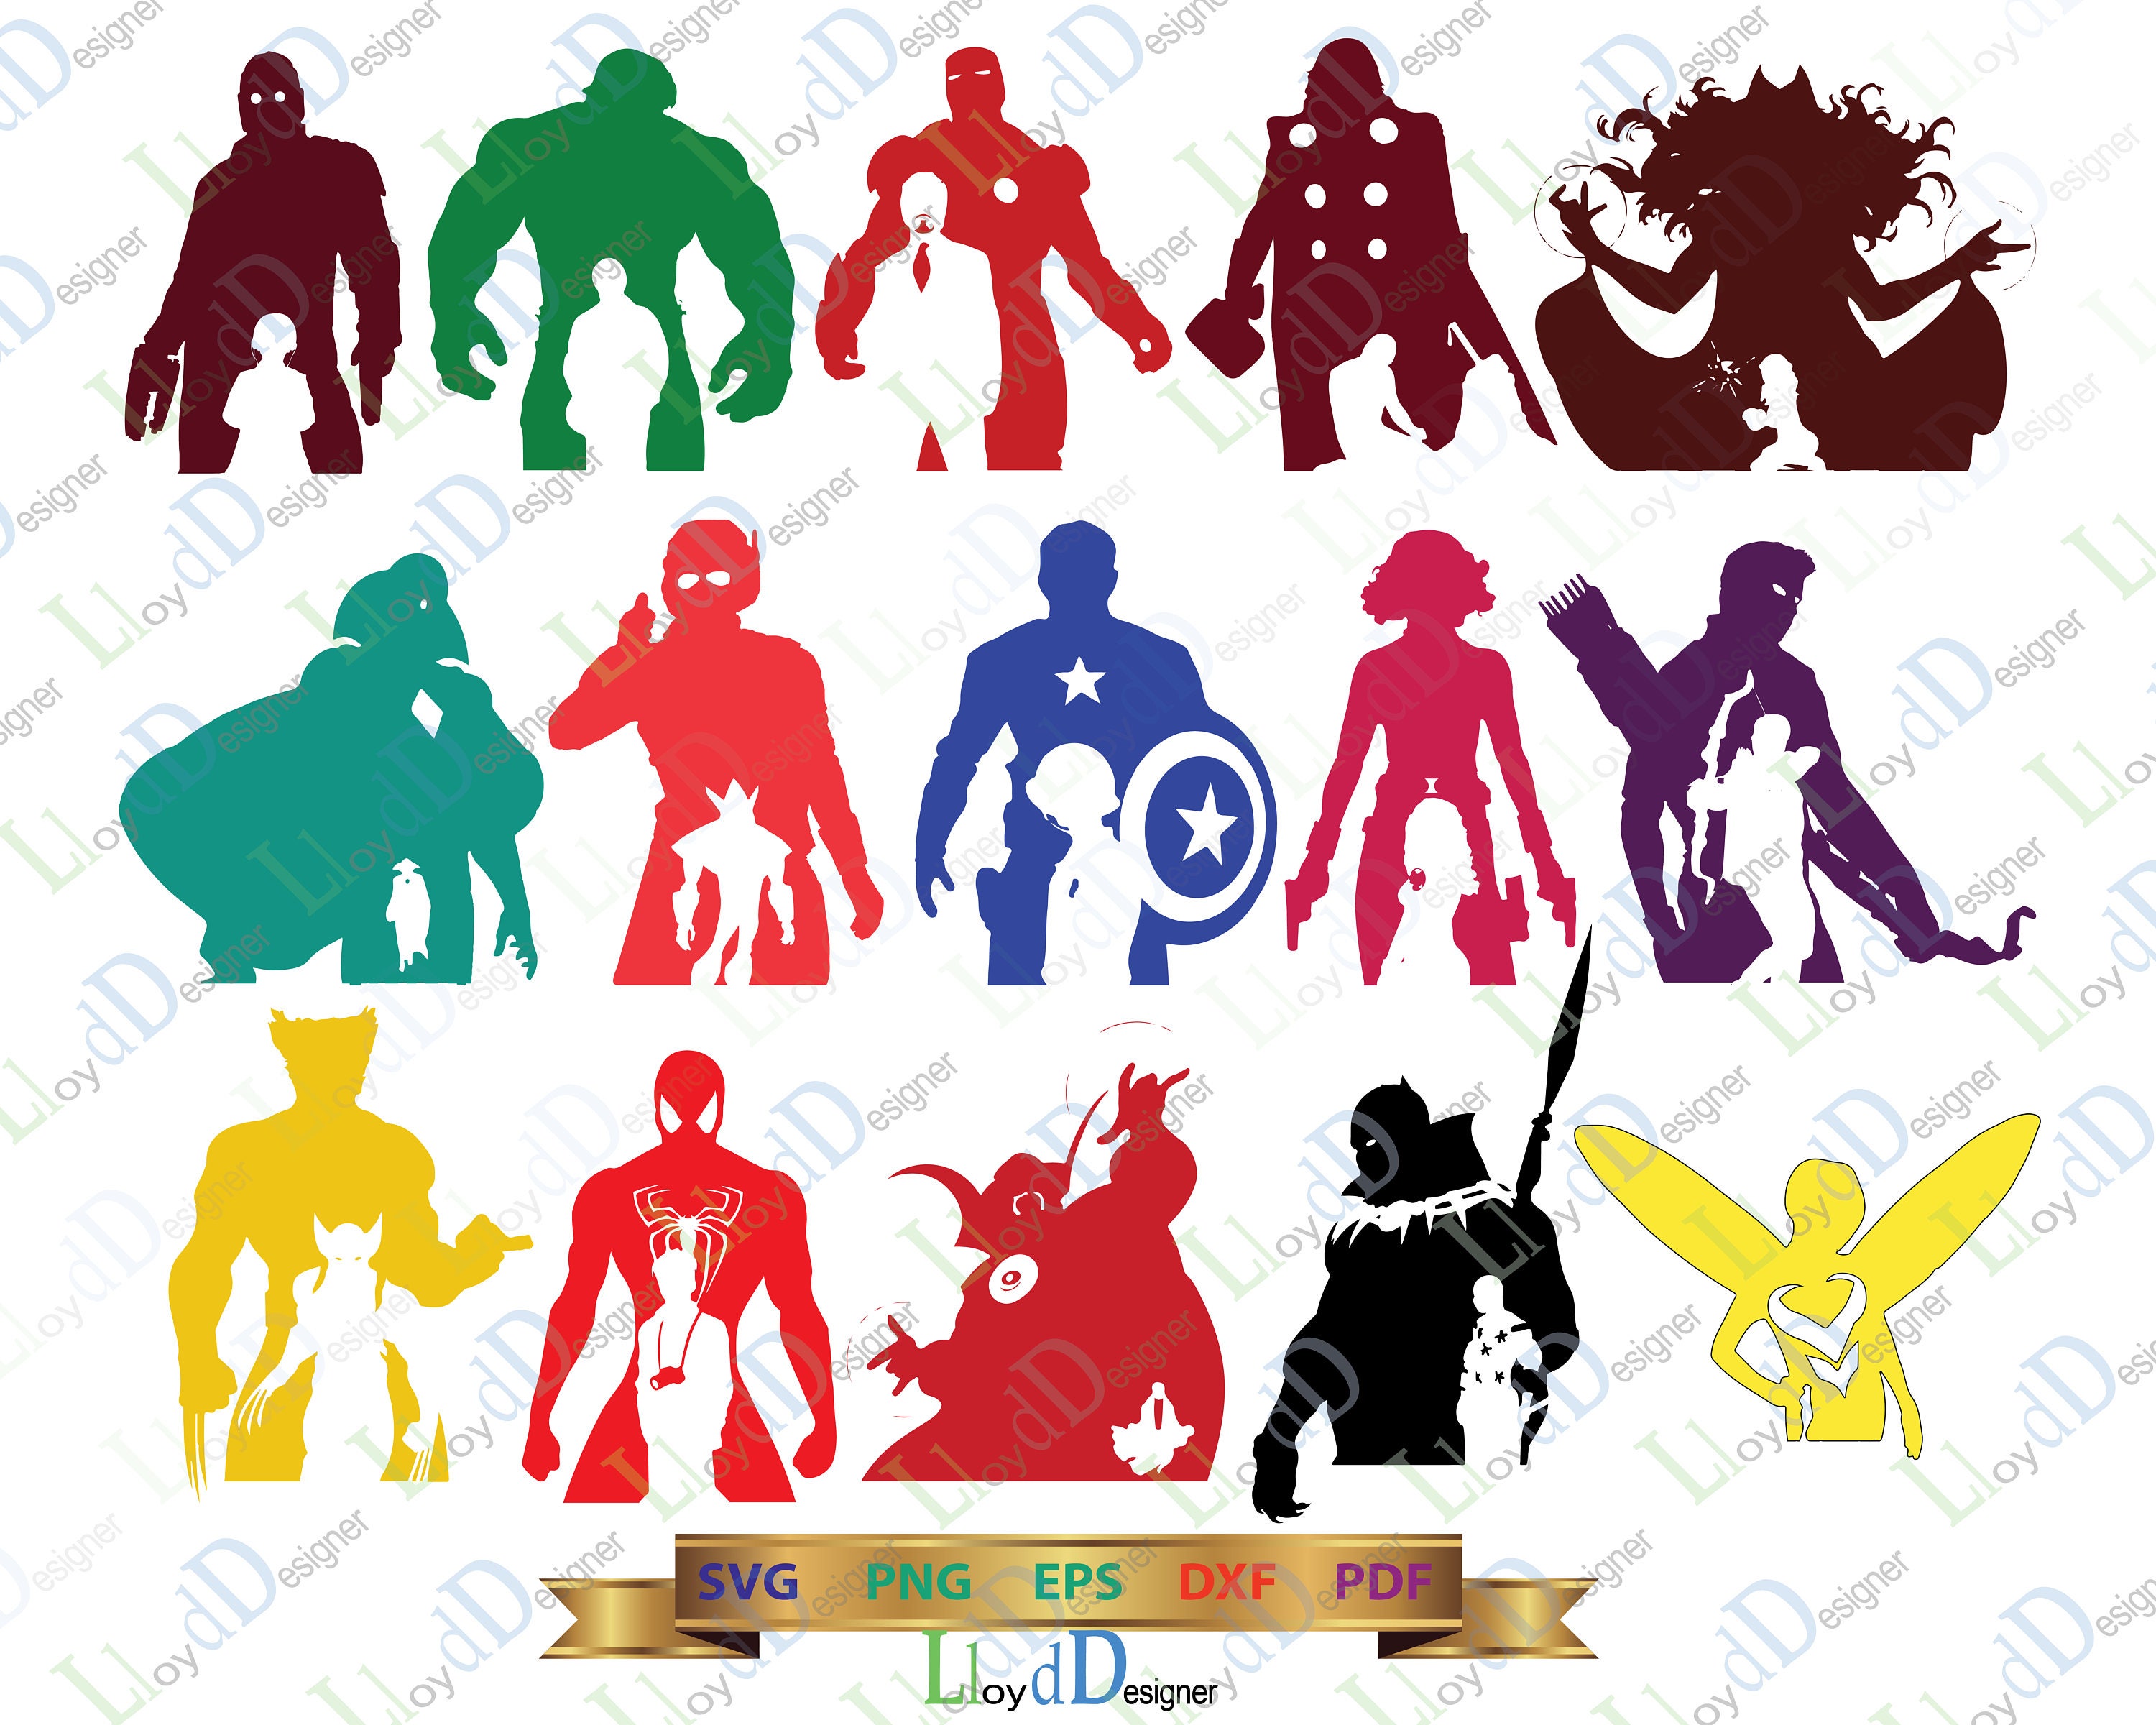 Download Avengers SVG Marvel Avengers clipart Avengers silhouette